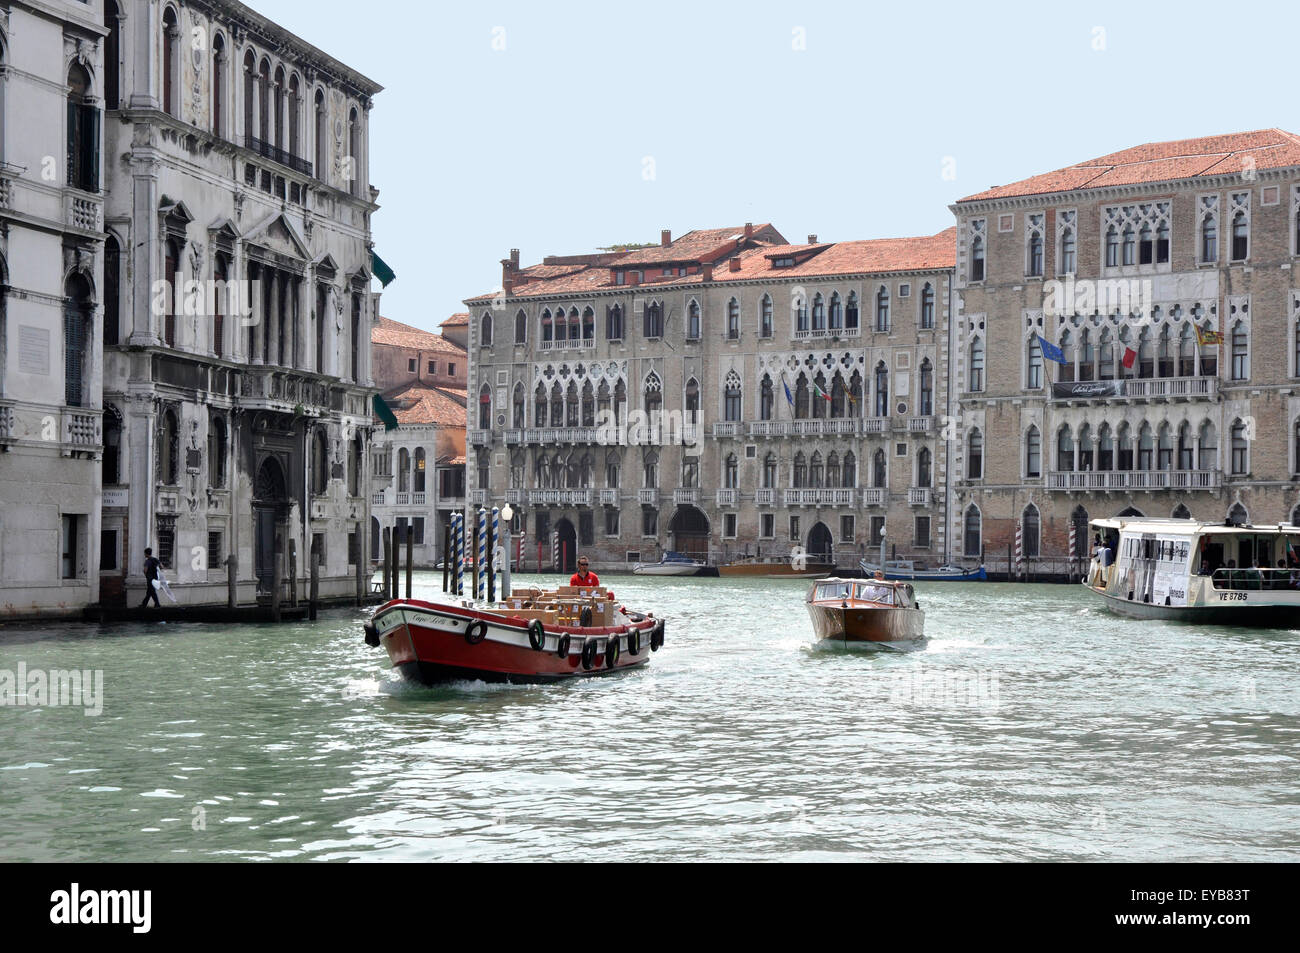 Italien - Venedig - auf den Canale Grande - sonnigen Boote + Fähren - Seeverkehr zwischen den eleganten Fassaden der venezianischen Palästen einmal Stockfoto